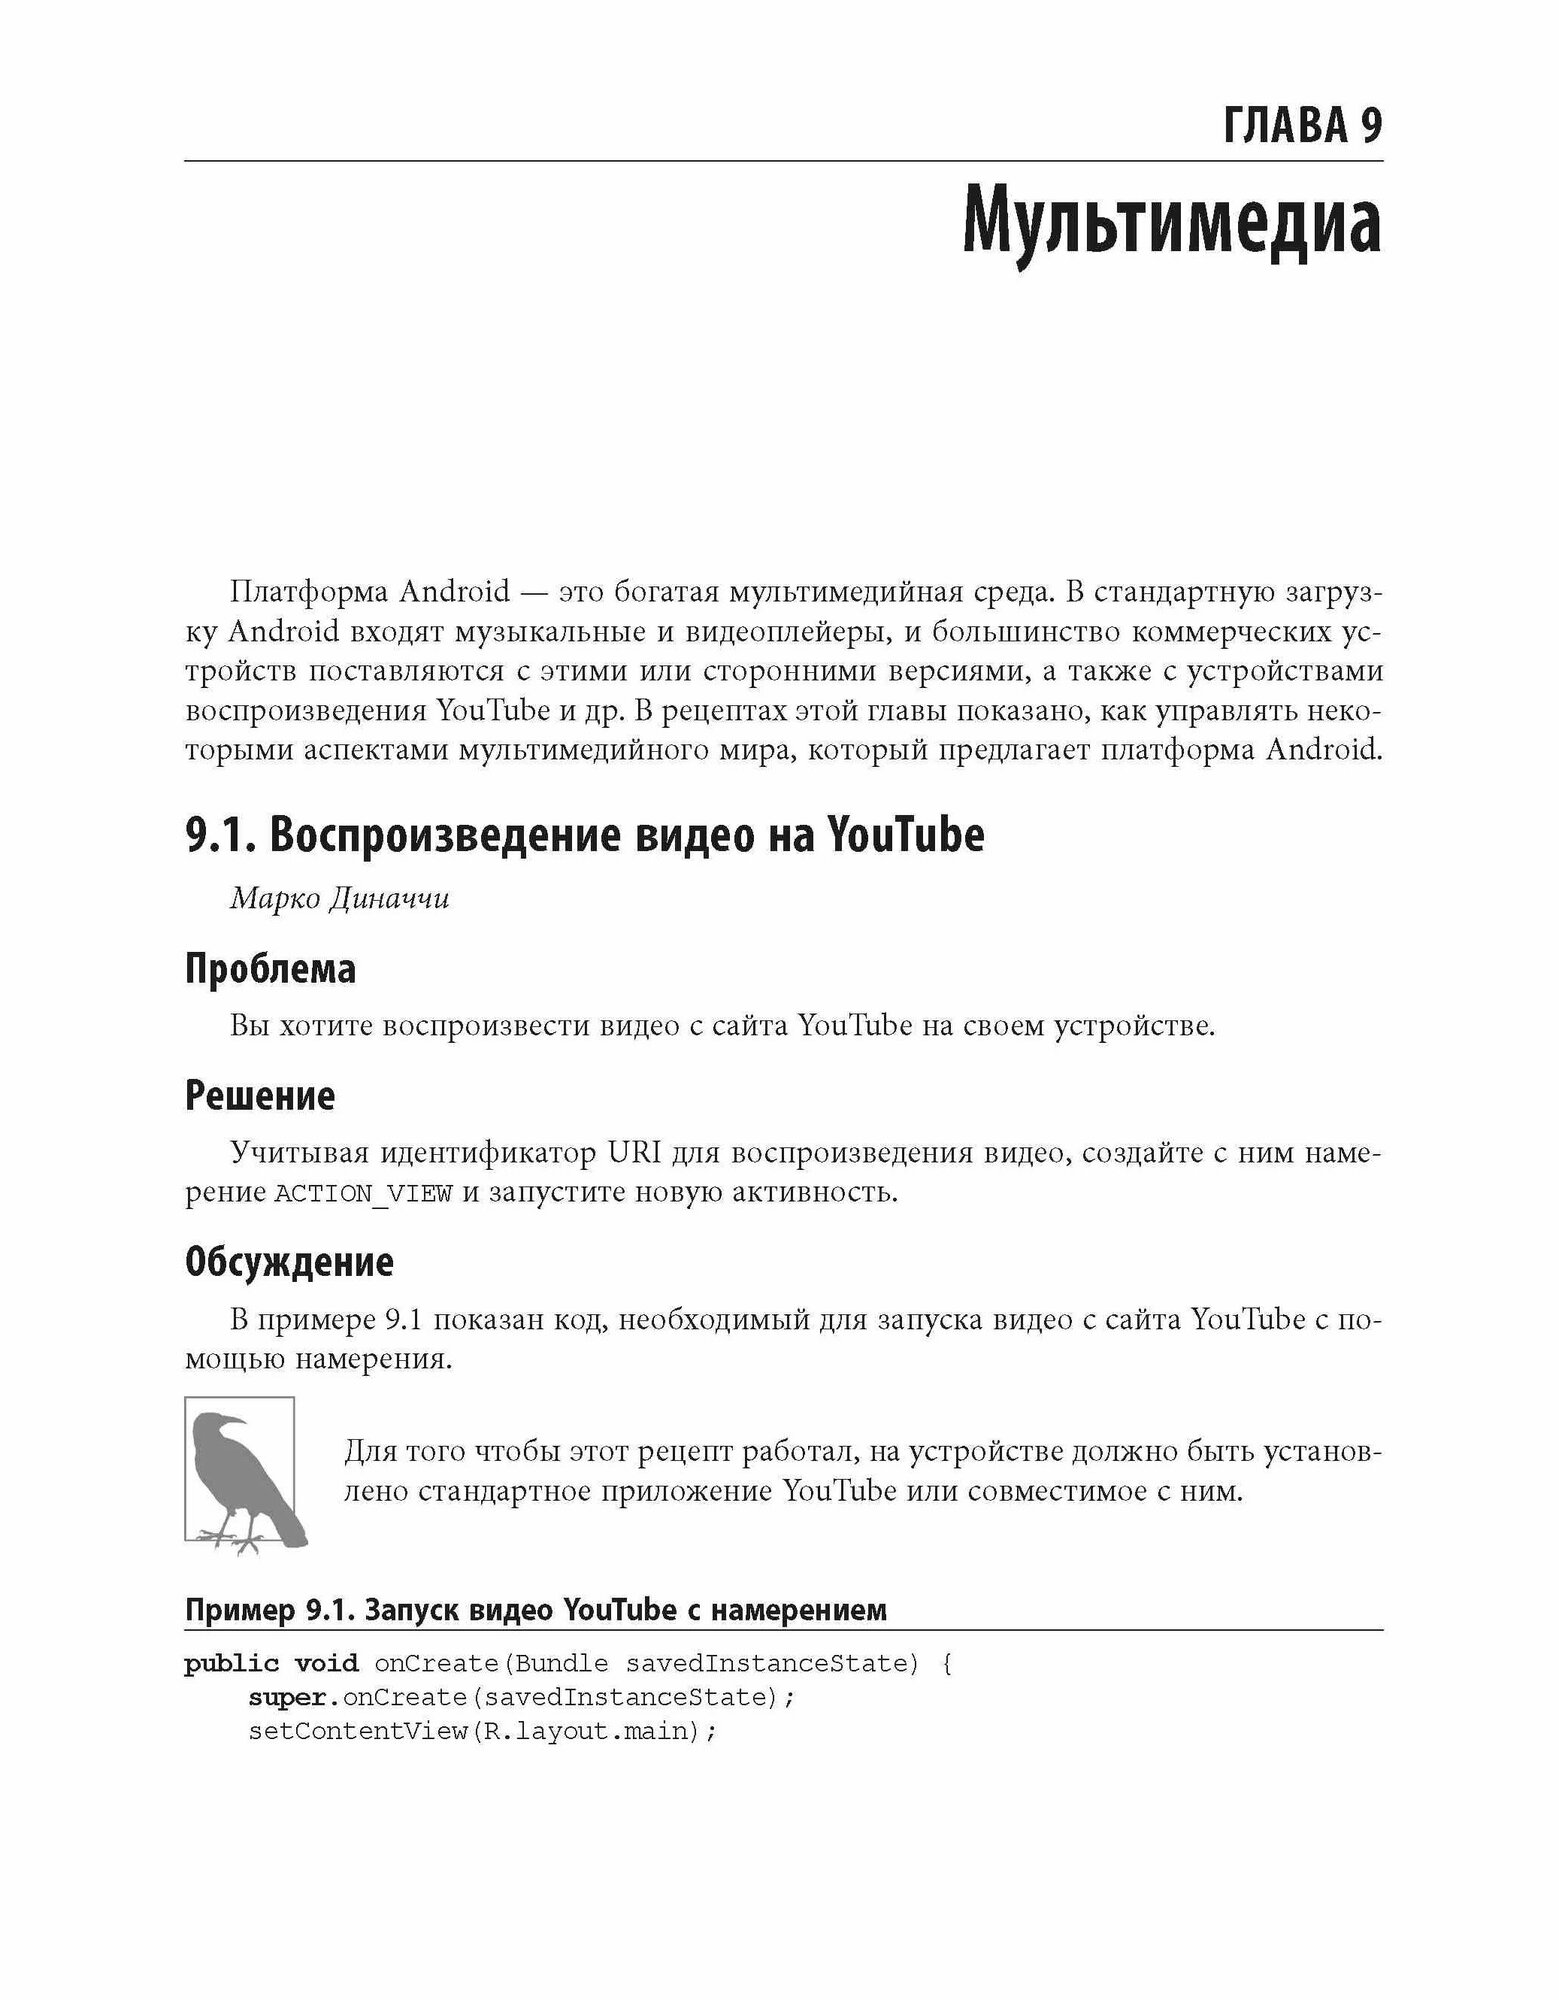 Android. Сборник рецептов. Задачи и решения для разработчиков приложений - фото №2